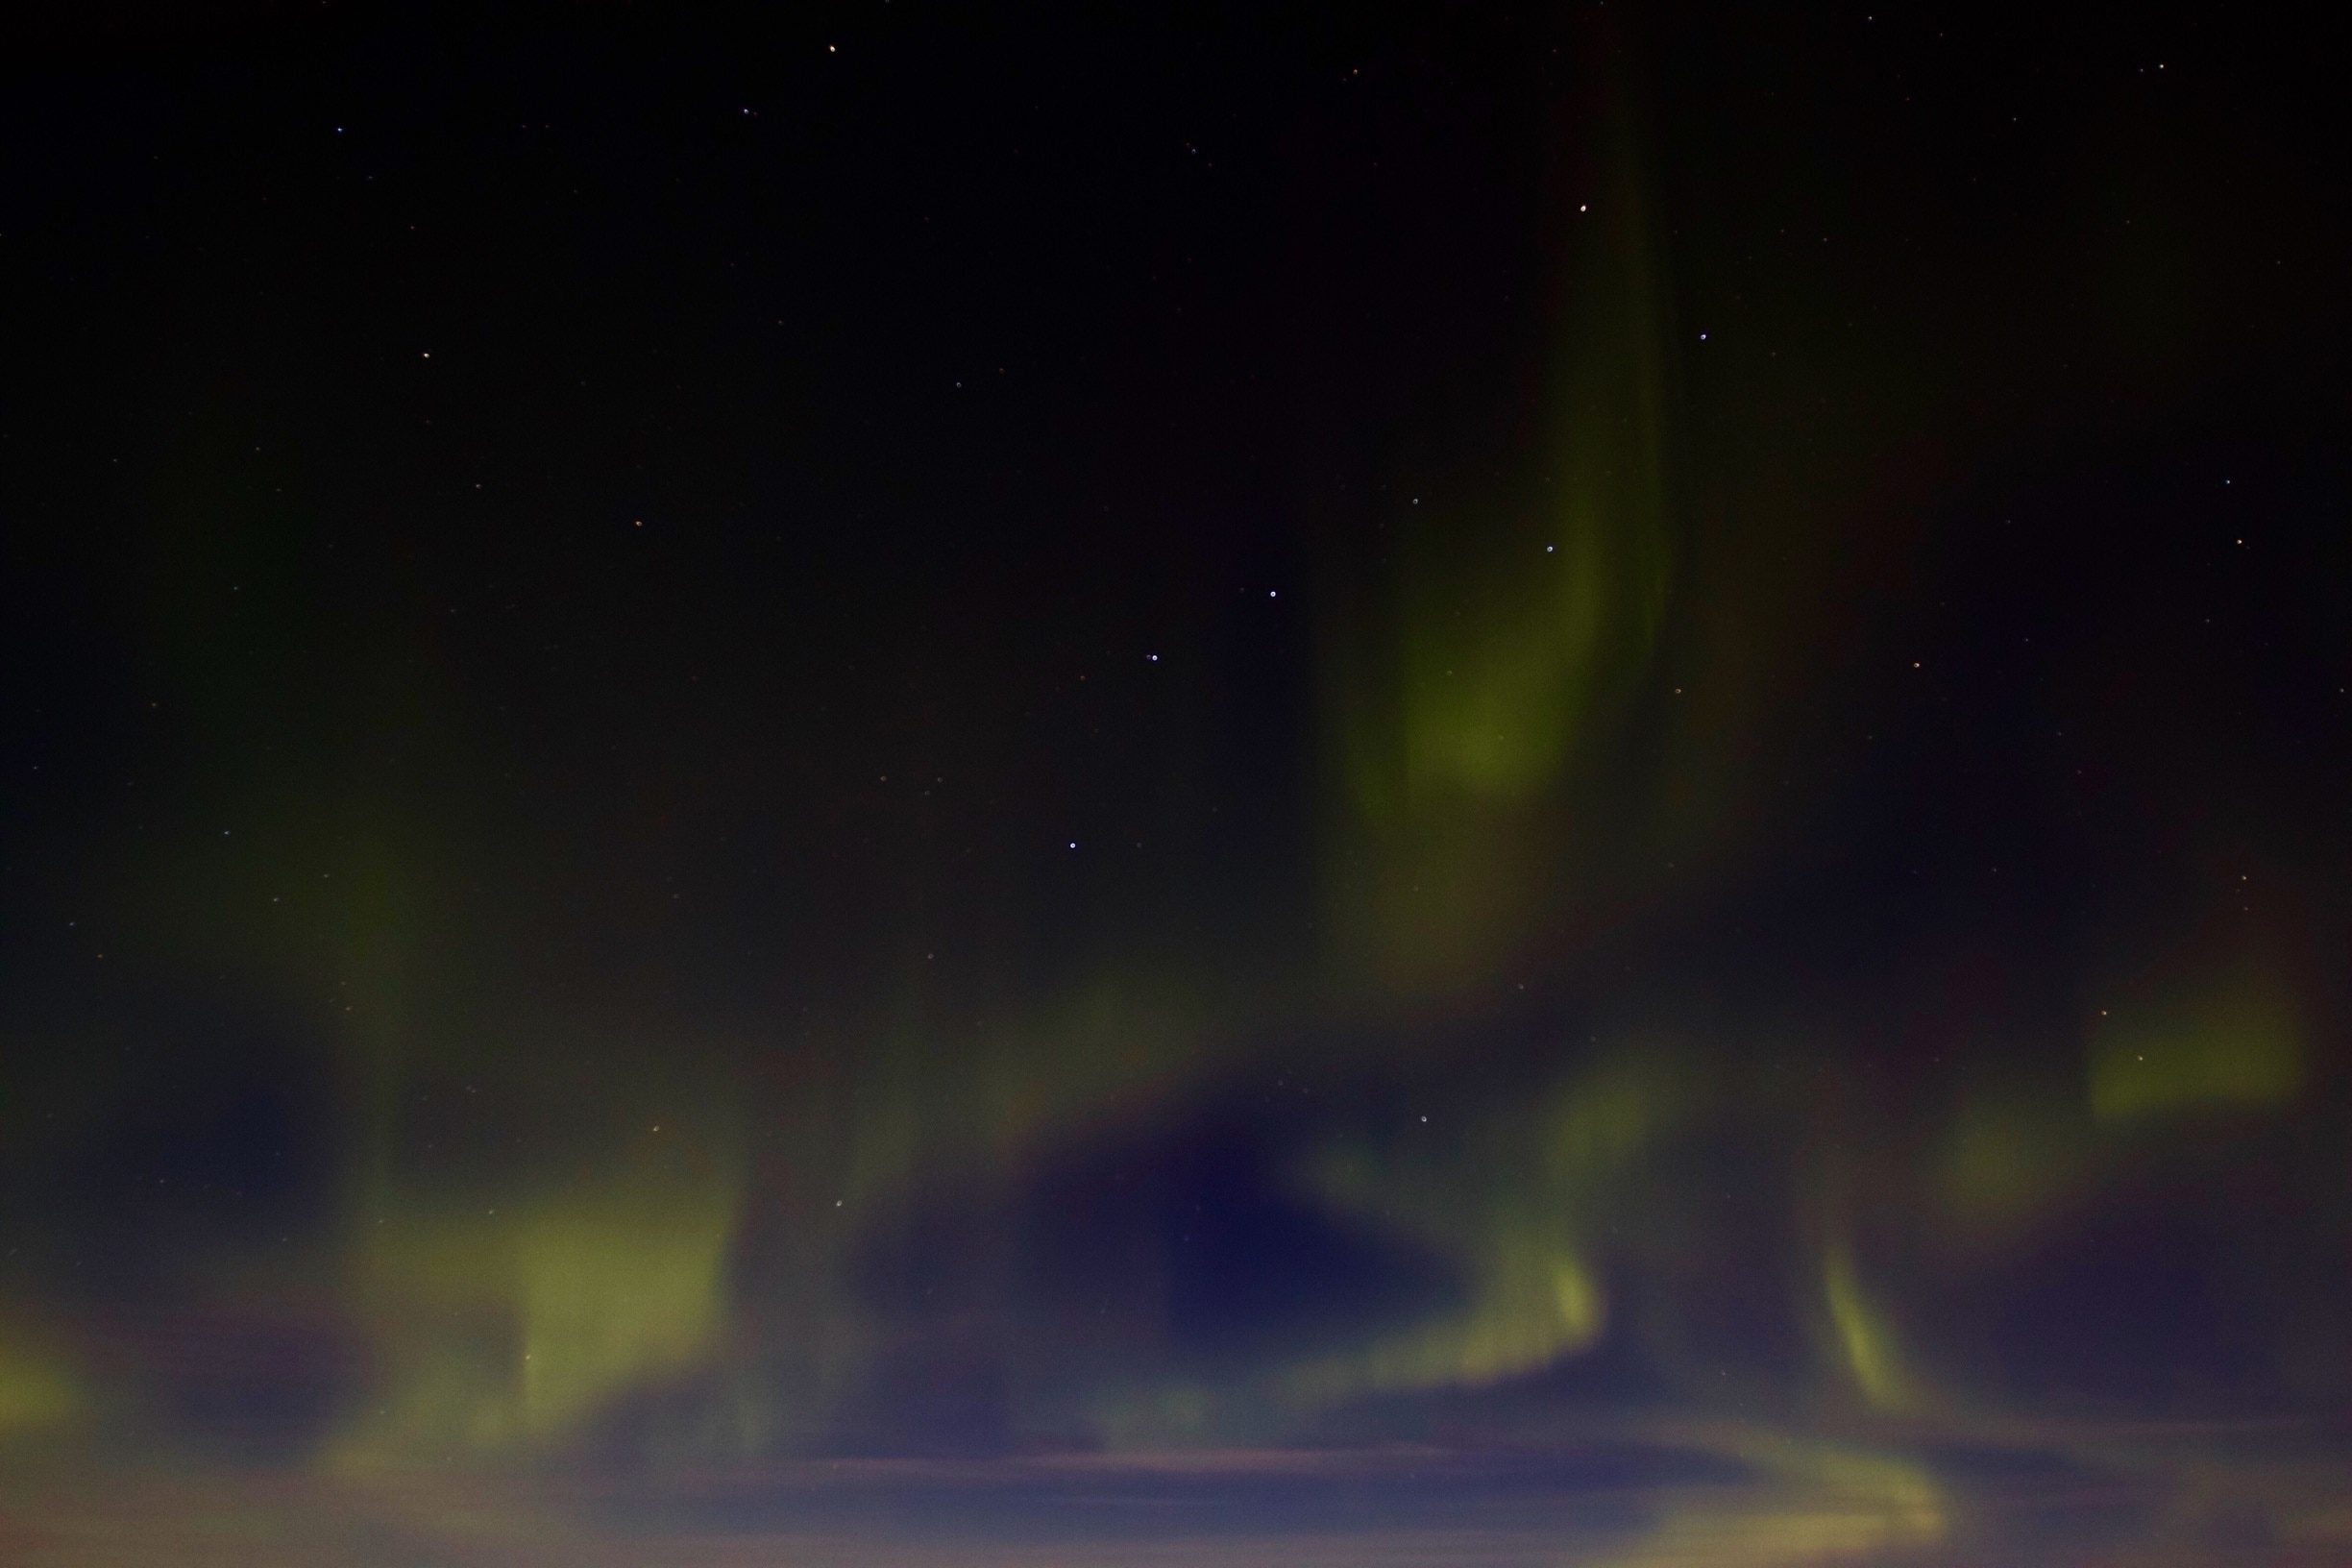 Aurora Borealis as seen from Ski Land, Fairbanks late Nov #lifeatexpedia